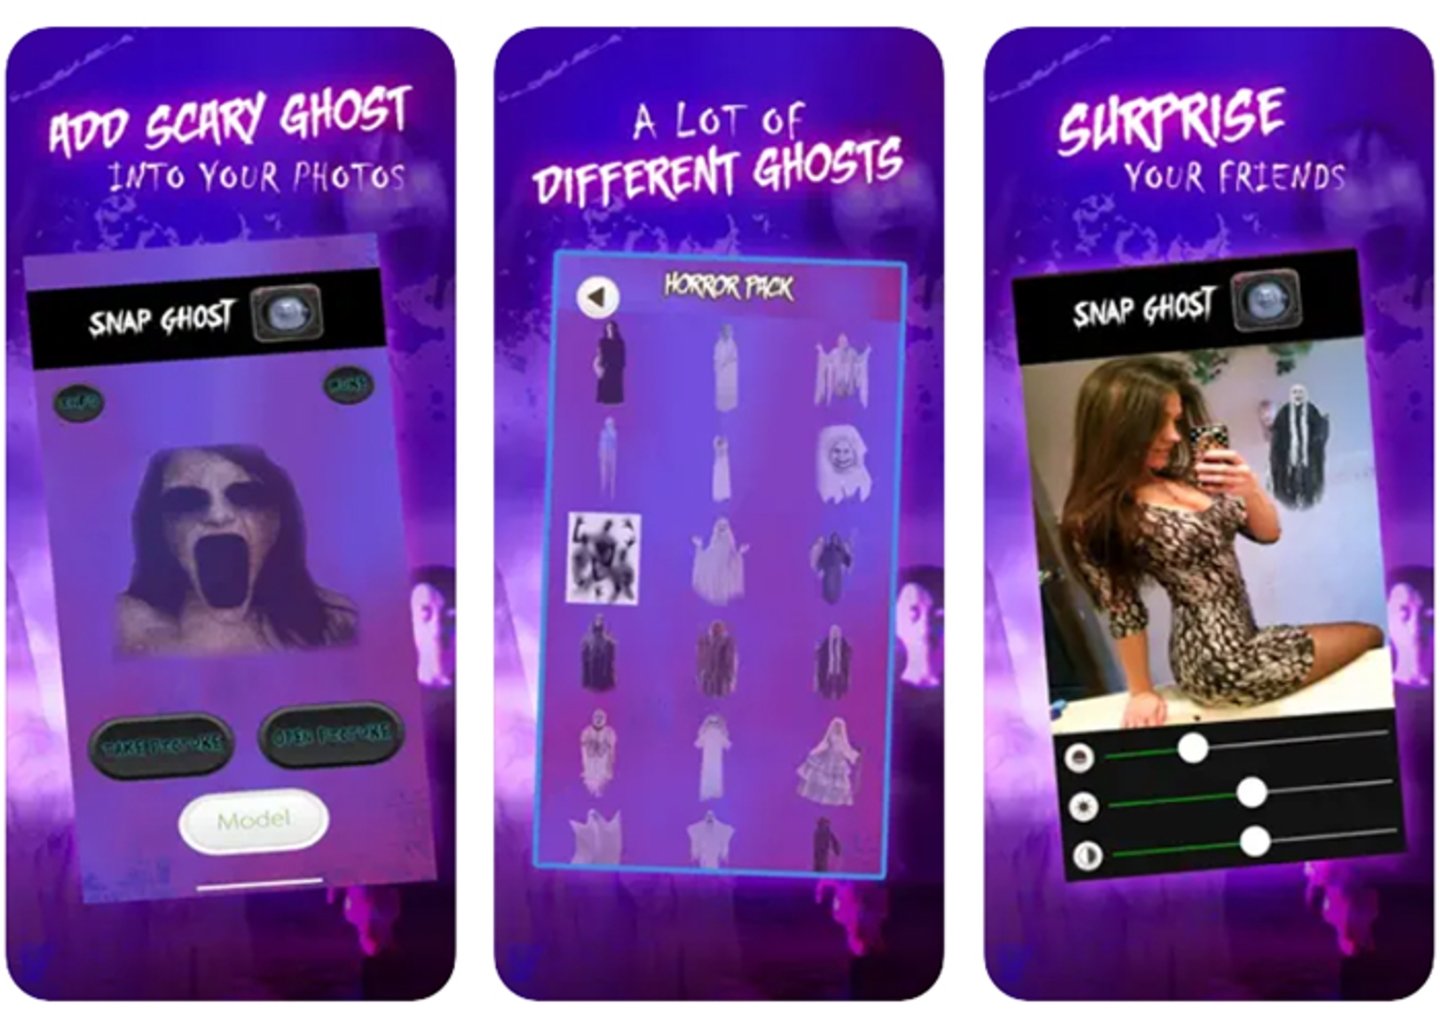 Flash Camara Fantasma- transforma tus fotos en pesadillas de Halloween